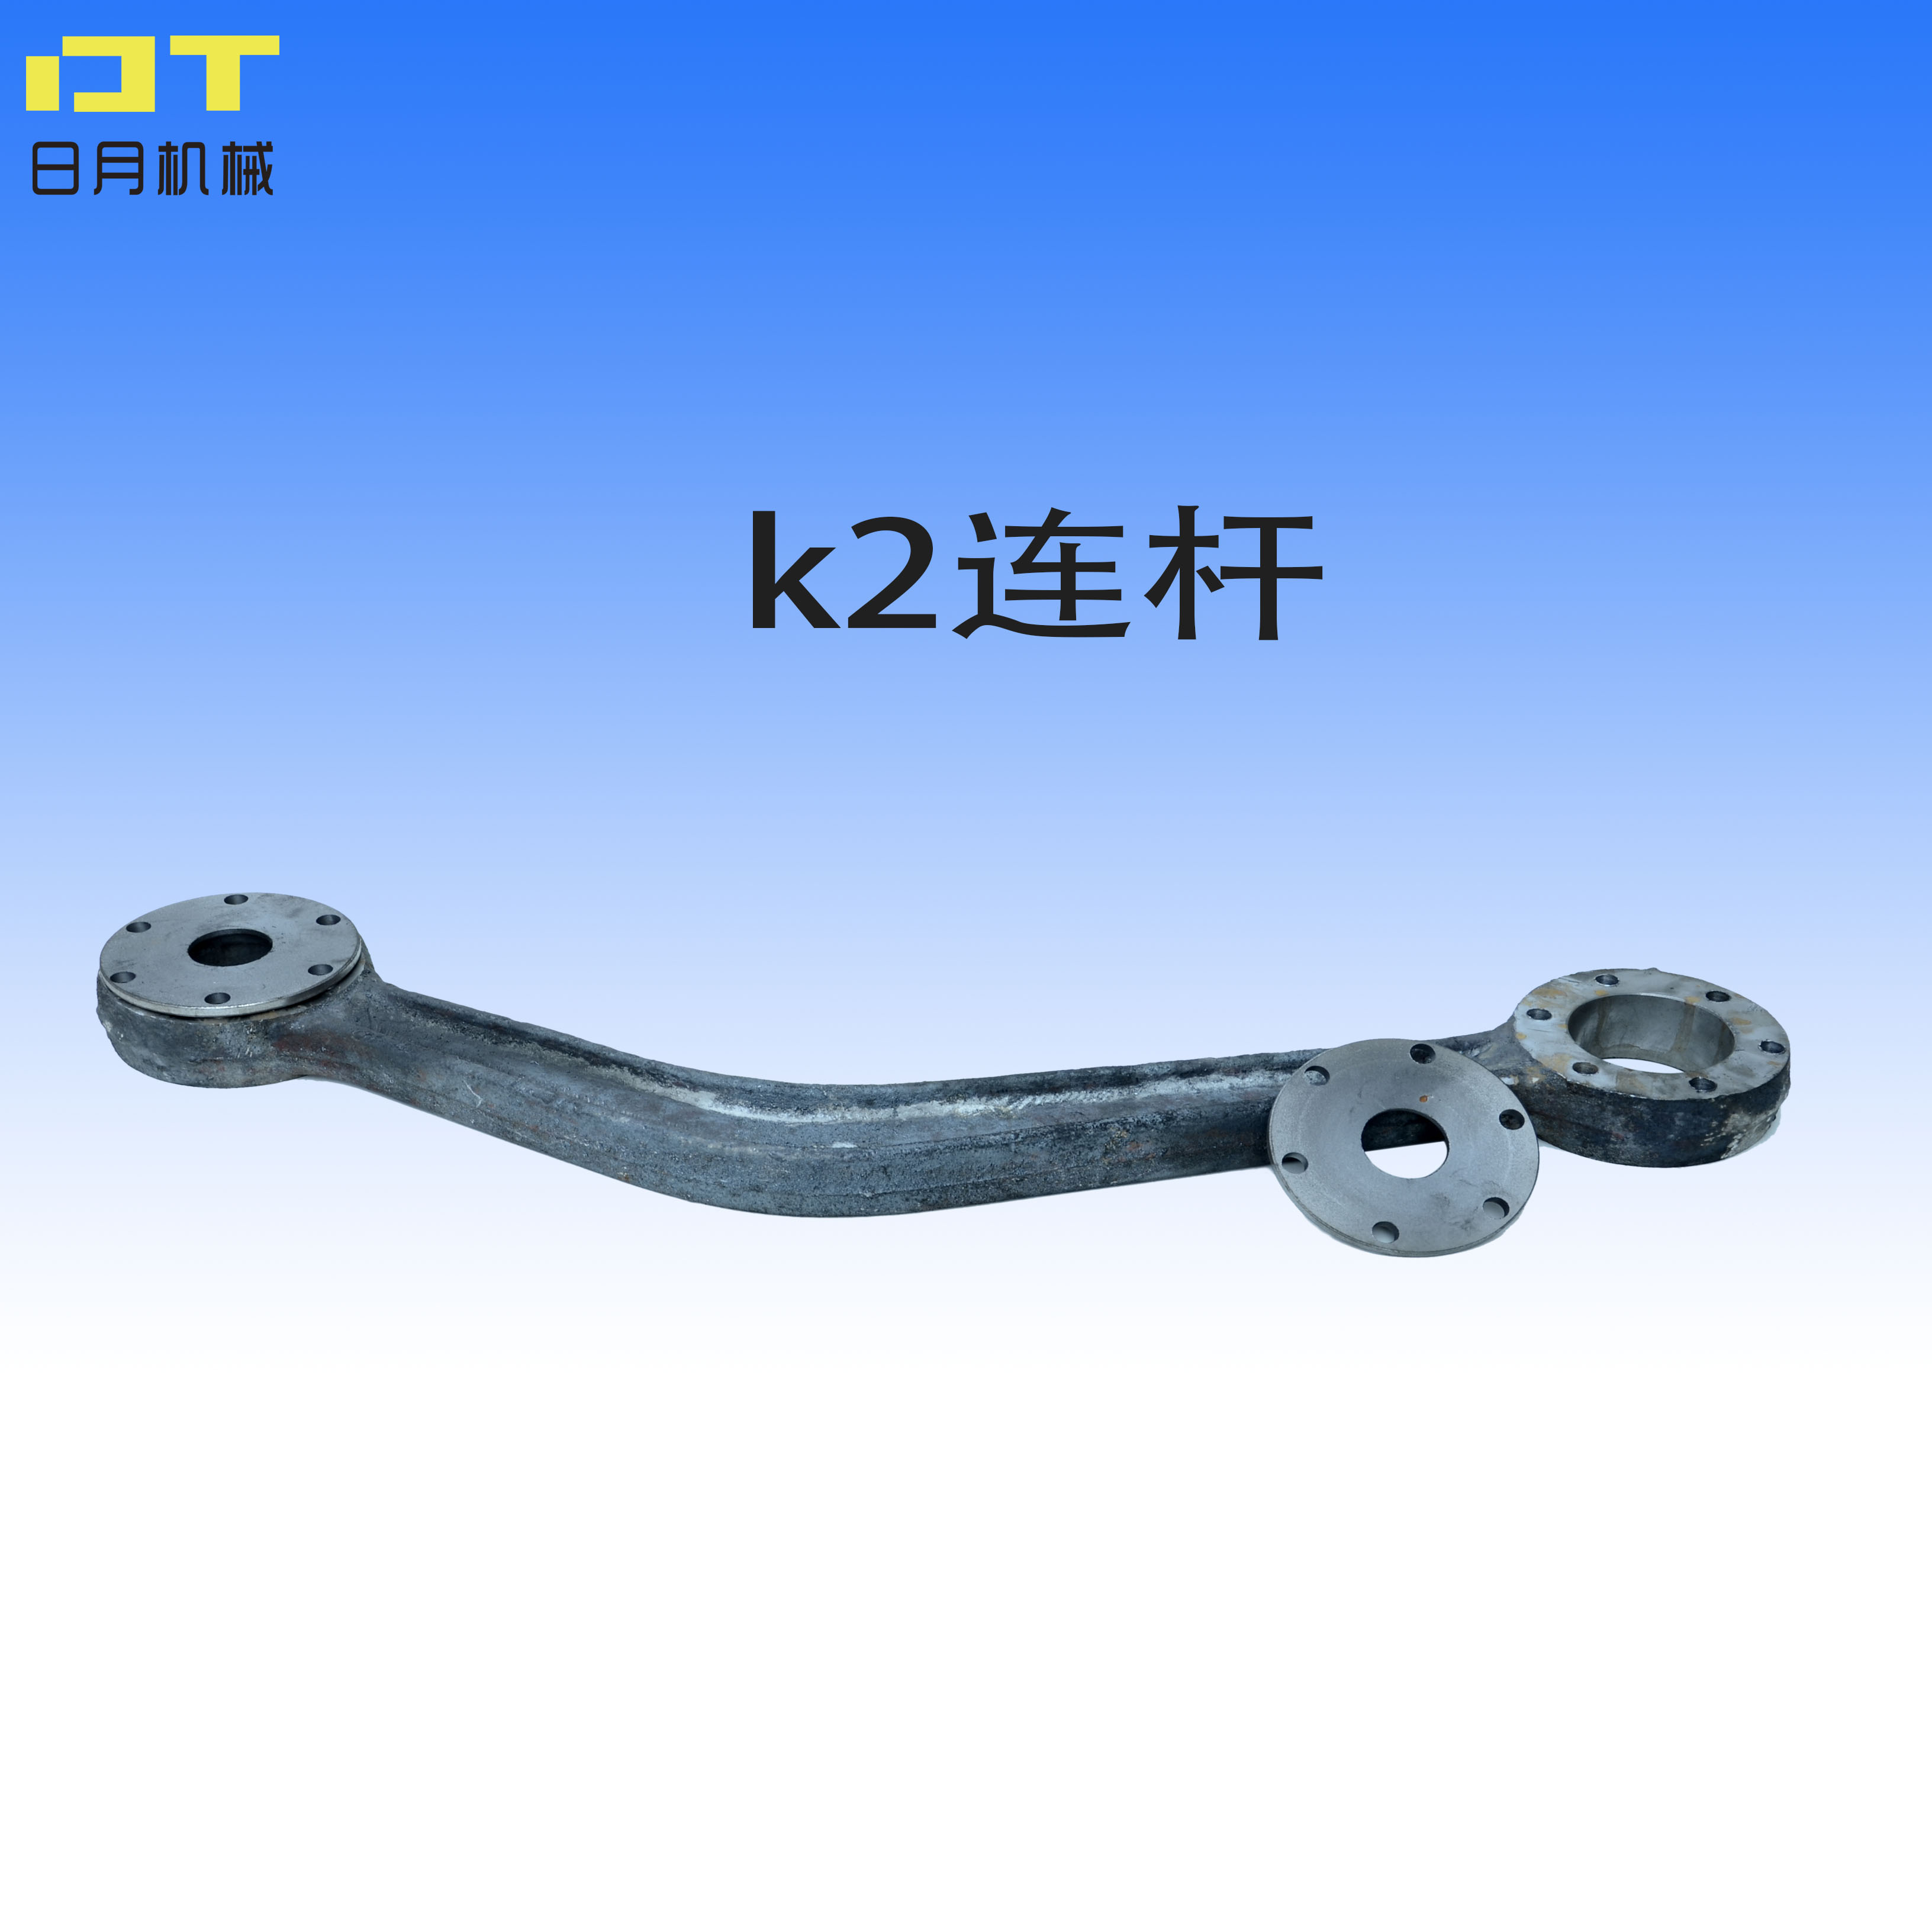 K0K1k2连杆k型往复式给煤机给料机连杆拐臂摇臂铸钢件定做连杆